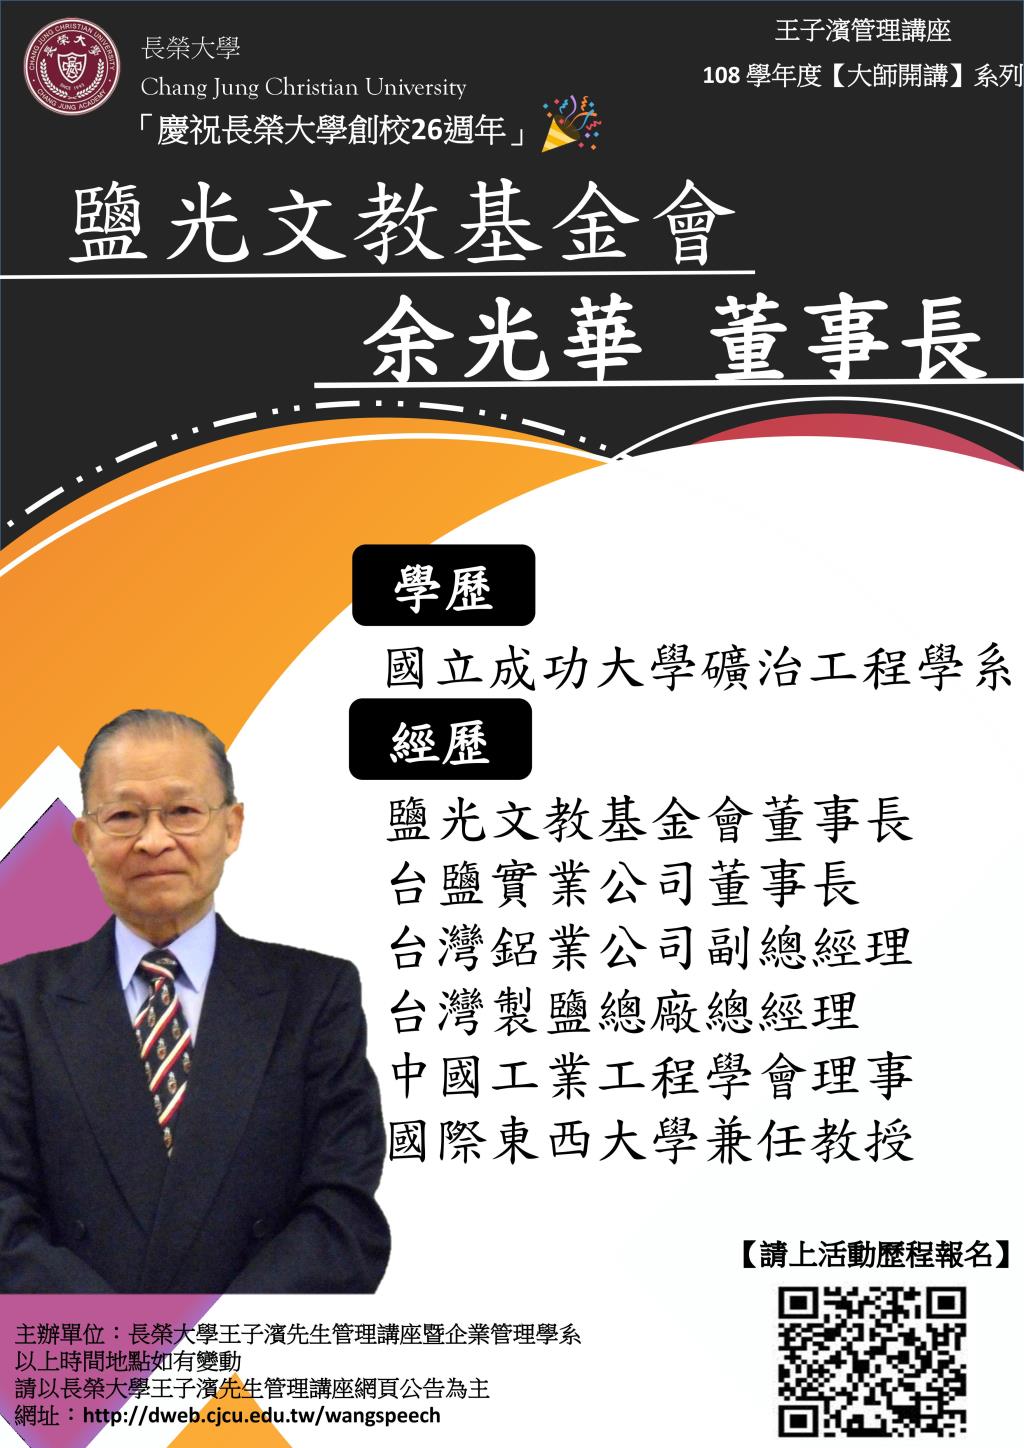 敬邀參加本週五下午(11/01)王子濱先生管理講---鹽光文教基金會 余光華董事長